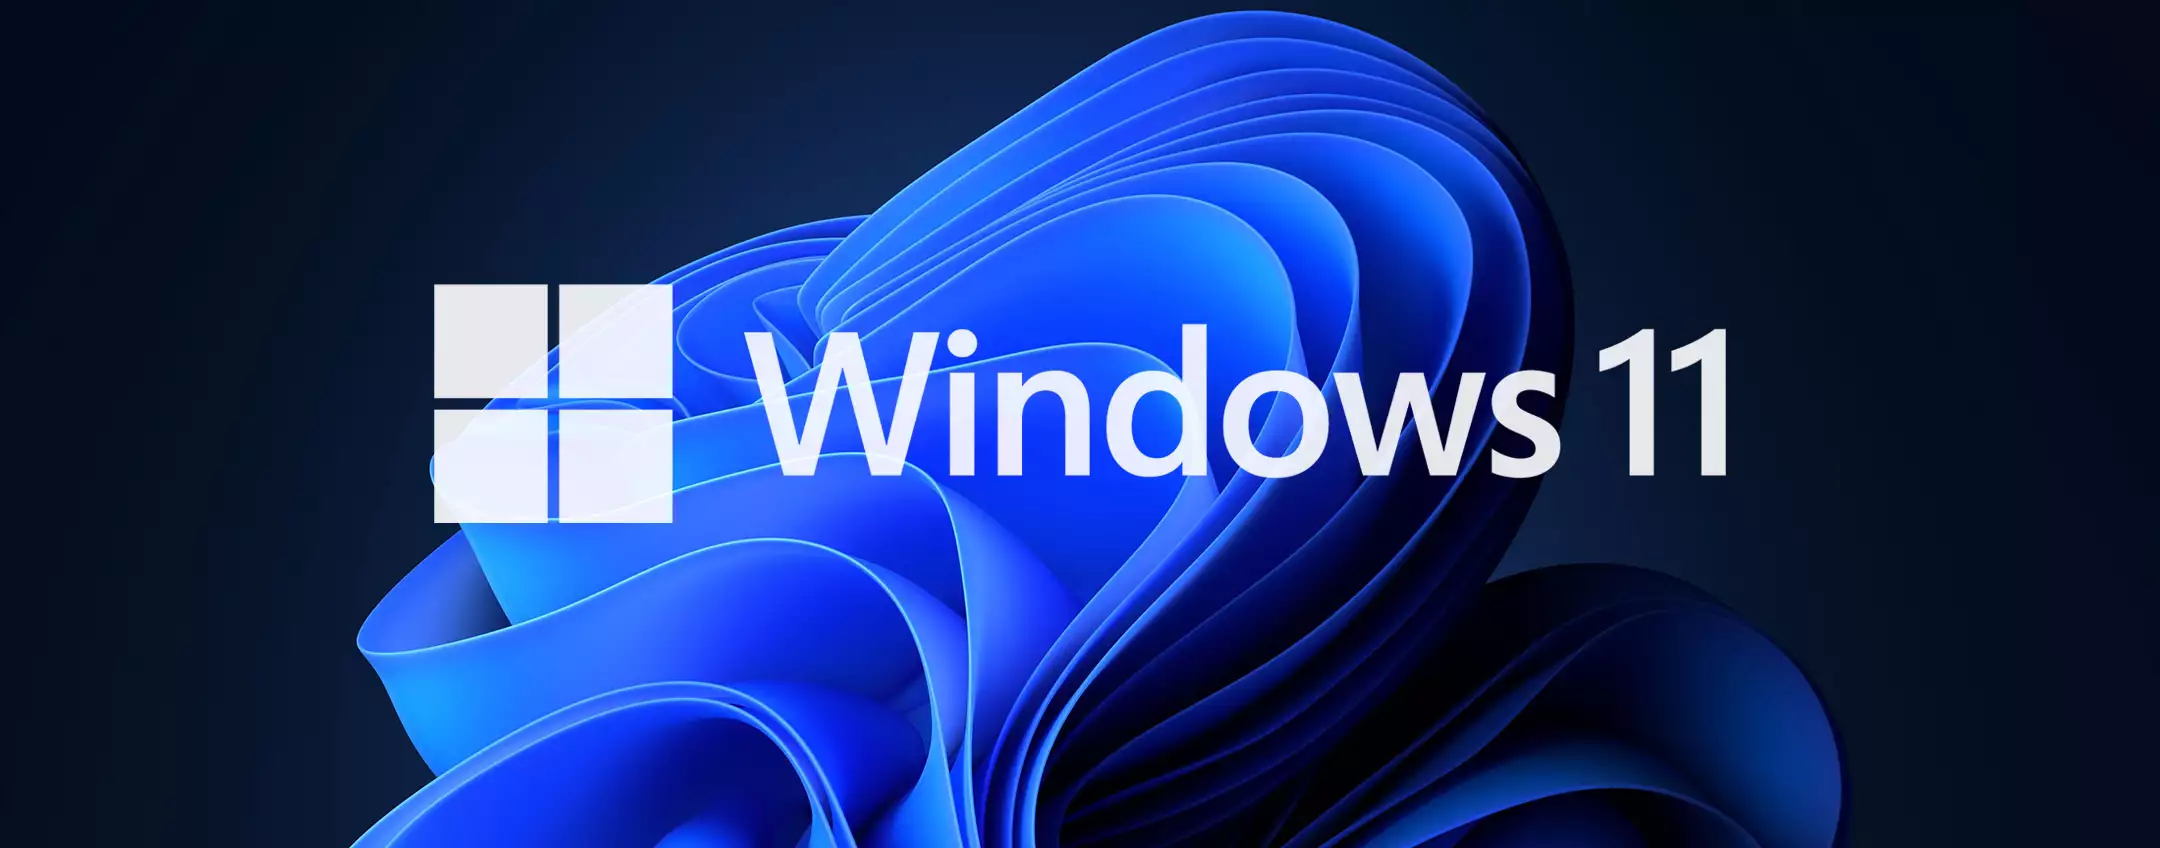 Windows 11: pubblicità in arrivo su 